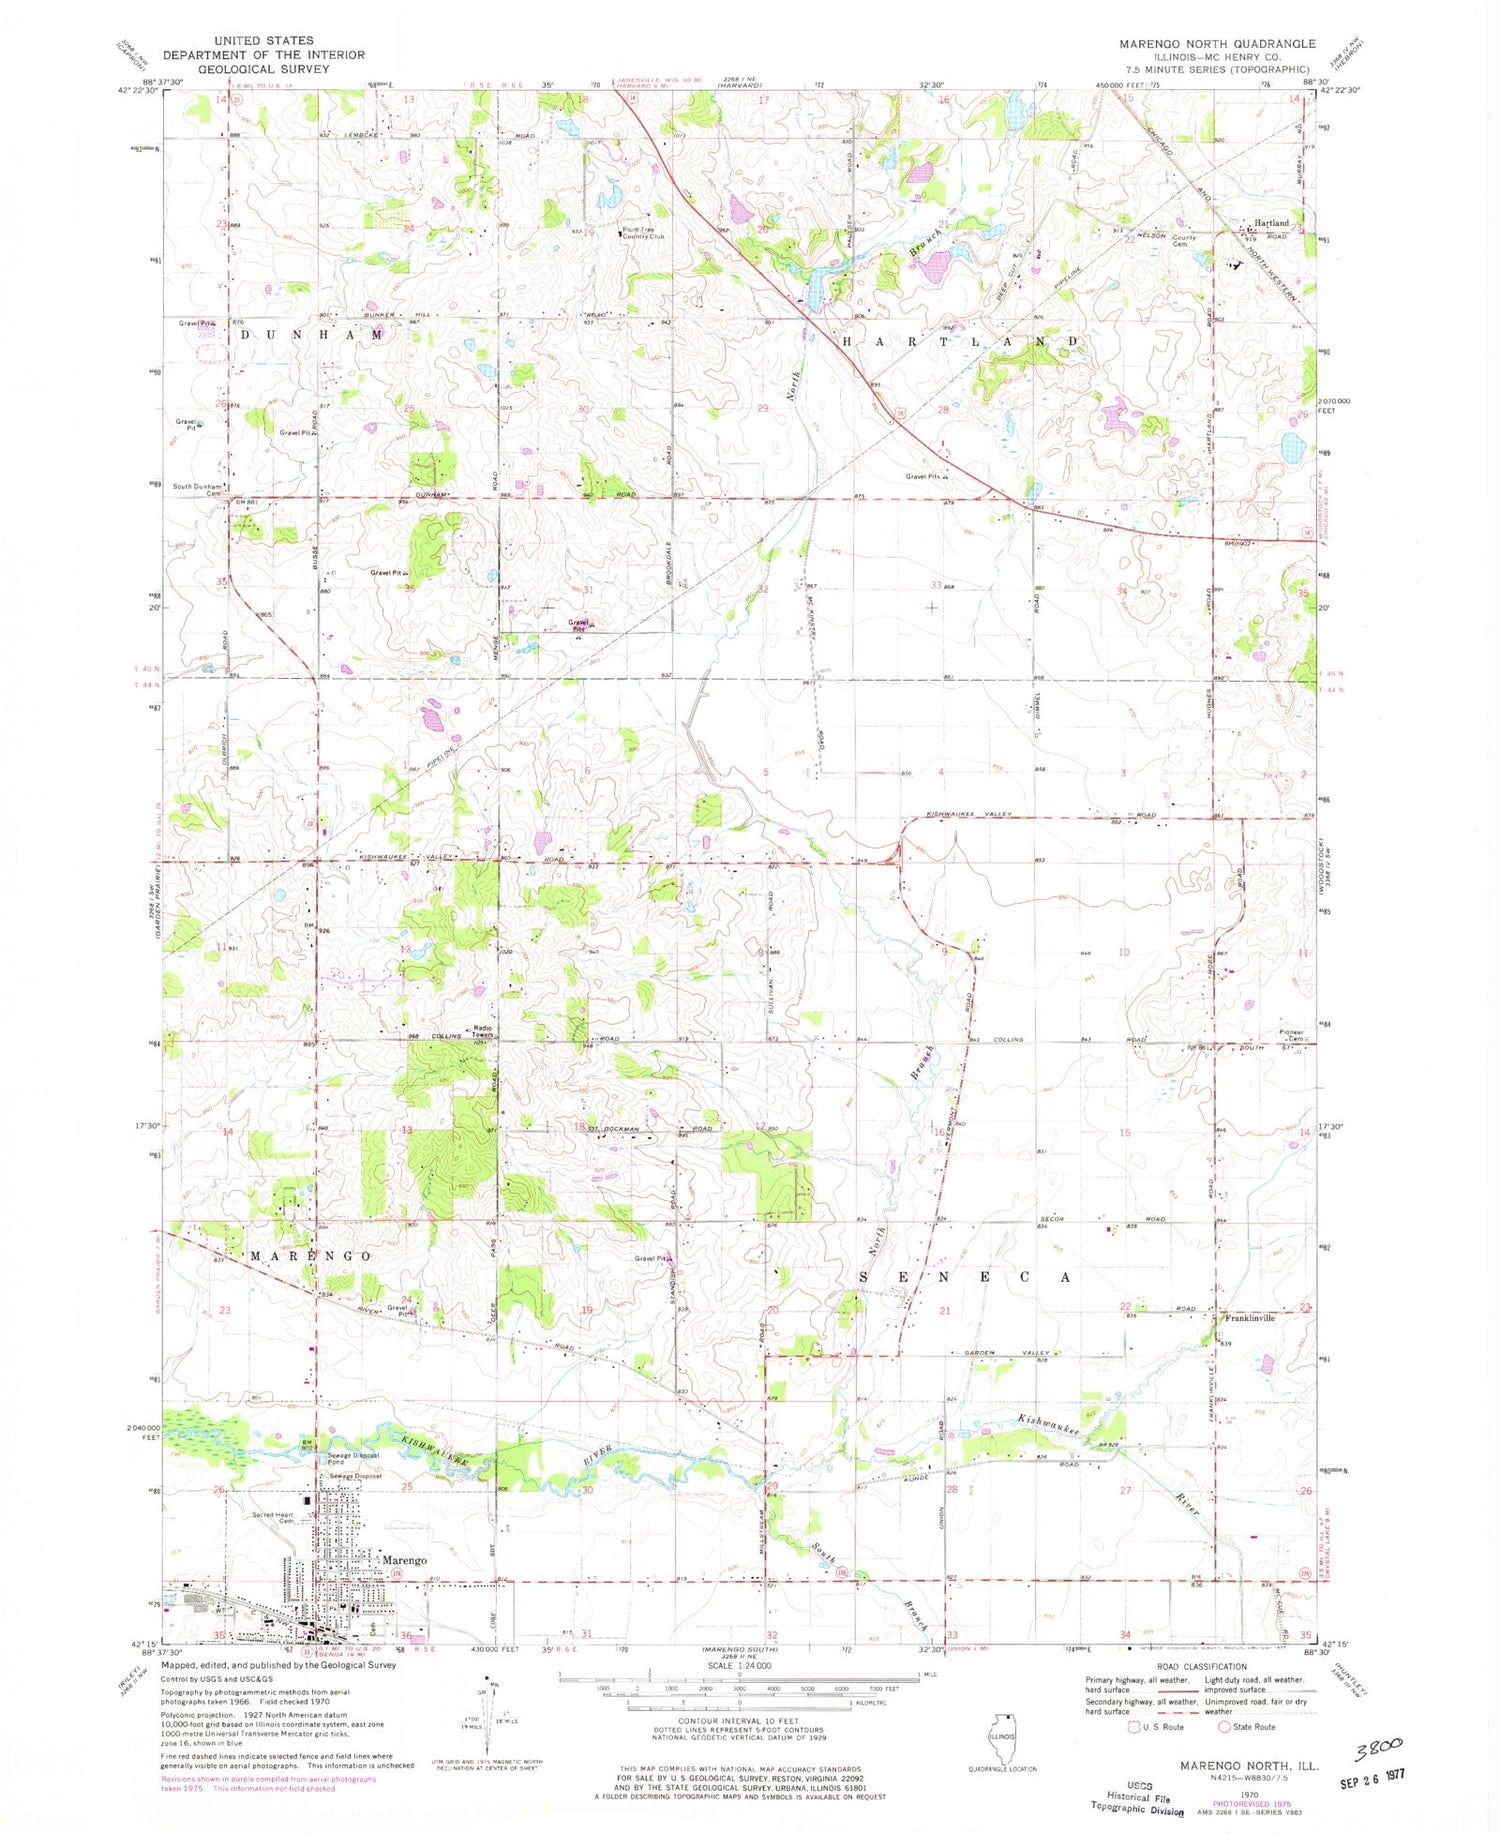 Classic USGS Marengo North Illinois 7.5'x7.5' Topo Map Image